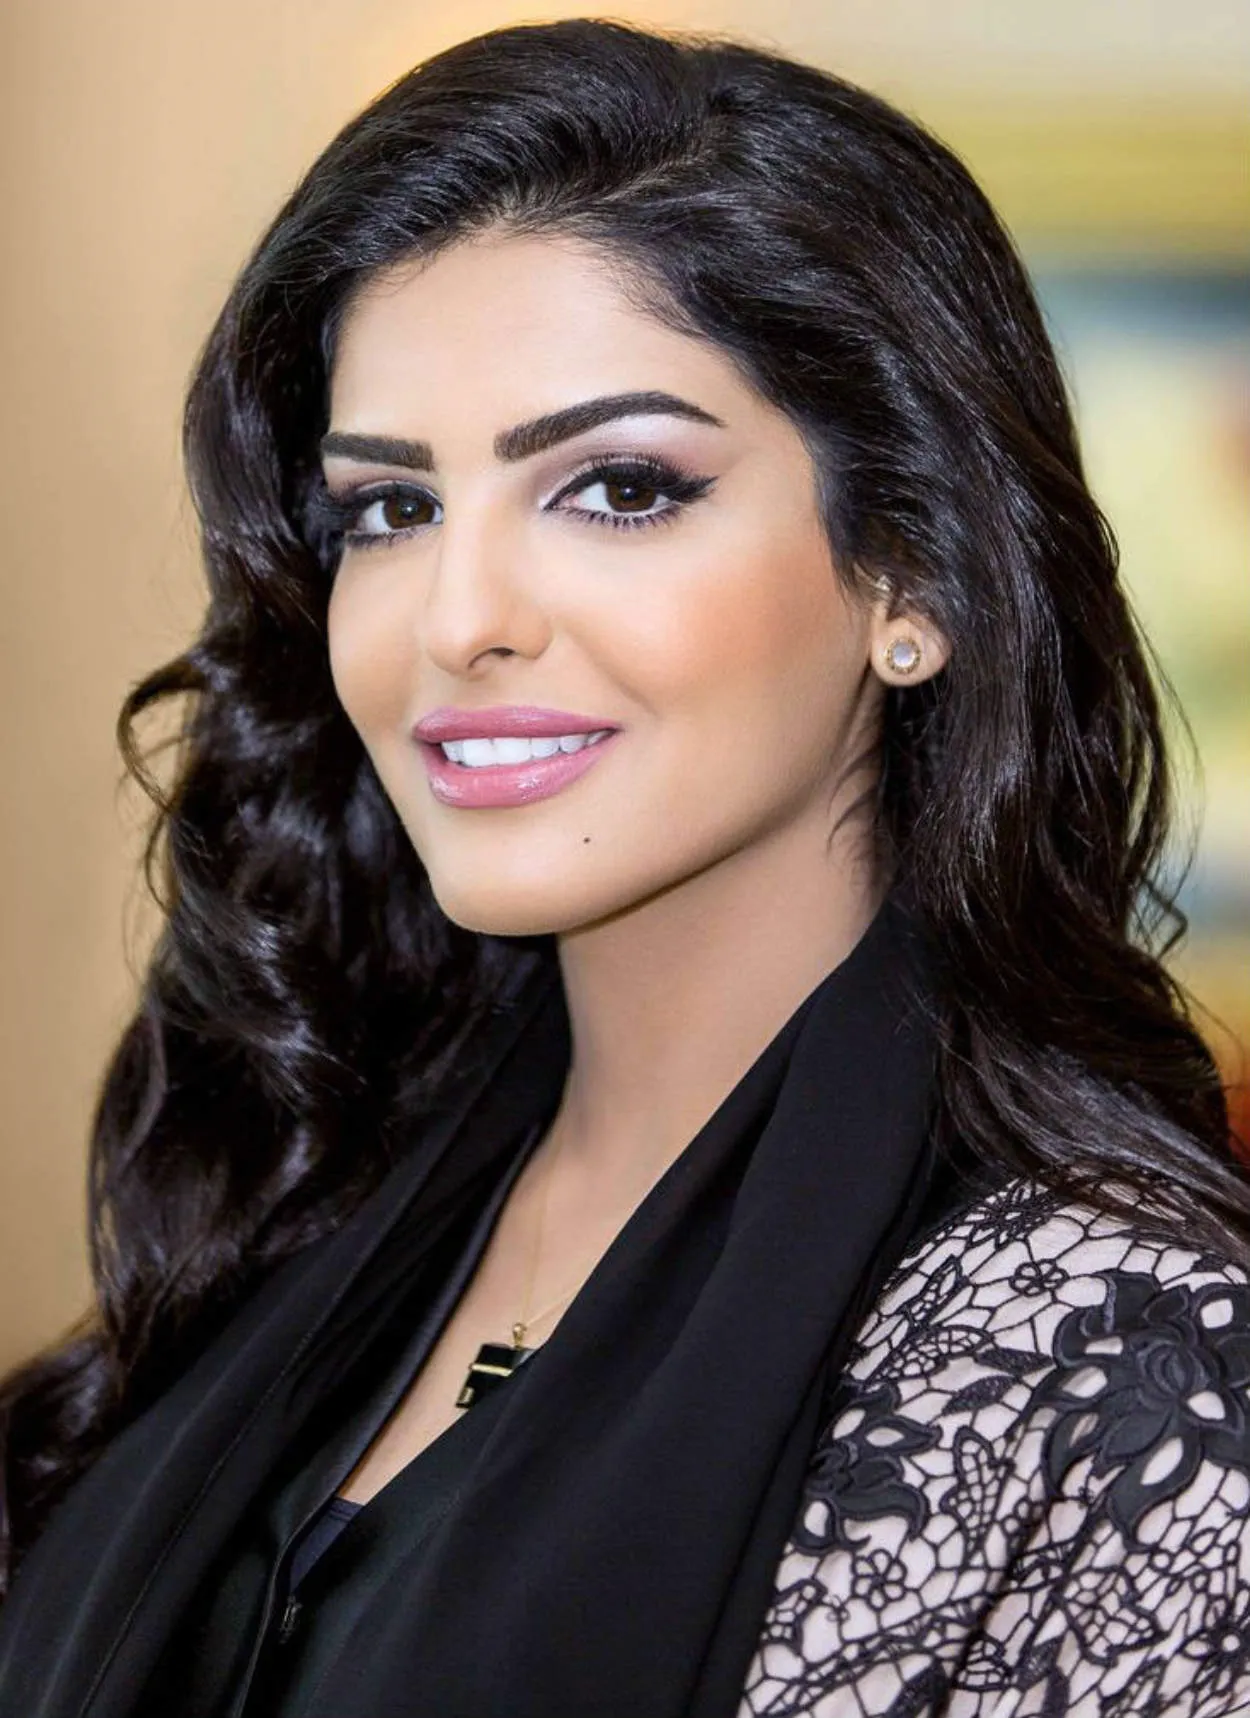 Arab Saudi beautiful woman or selebgram